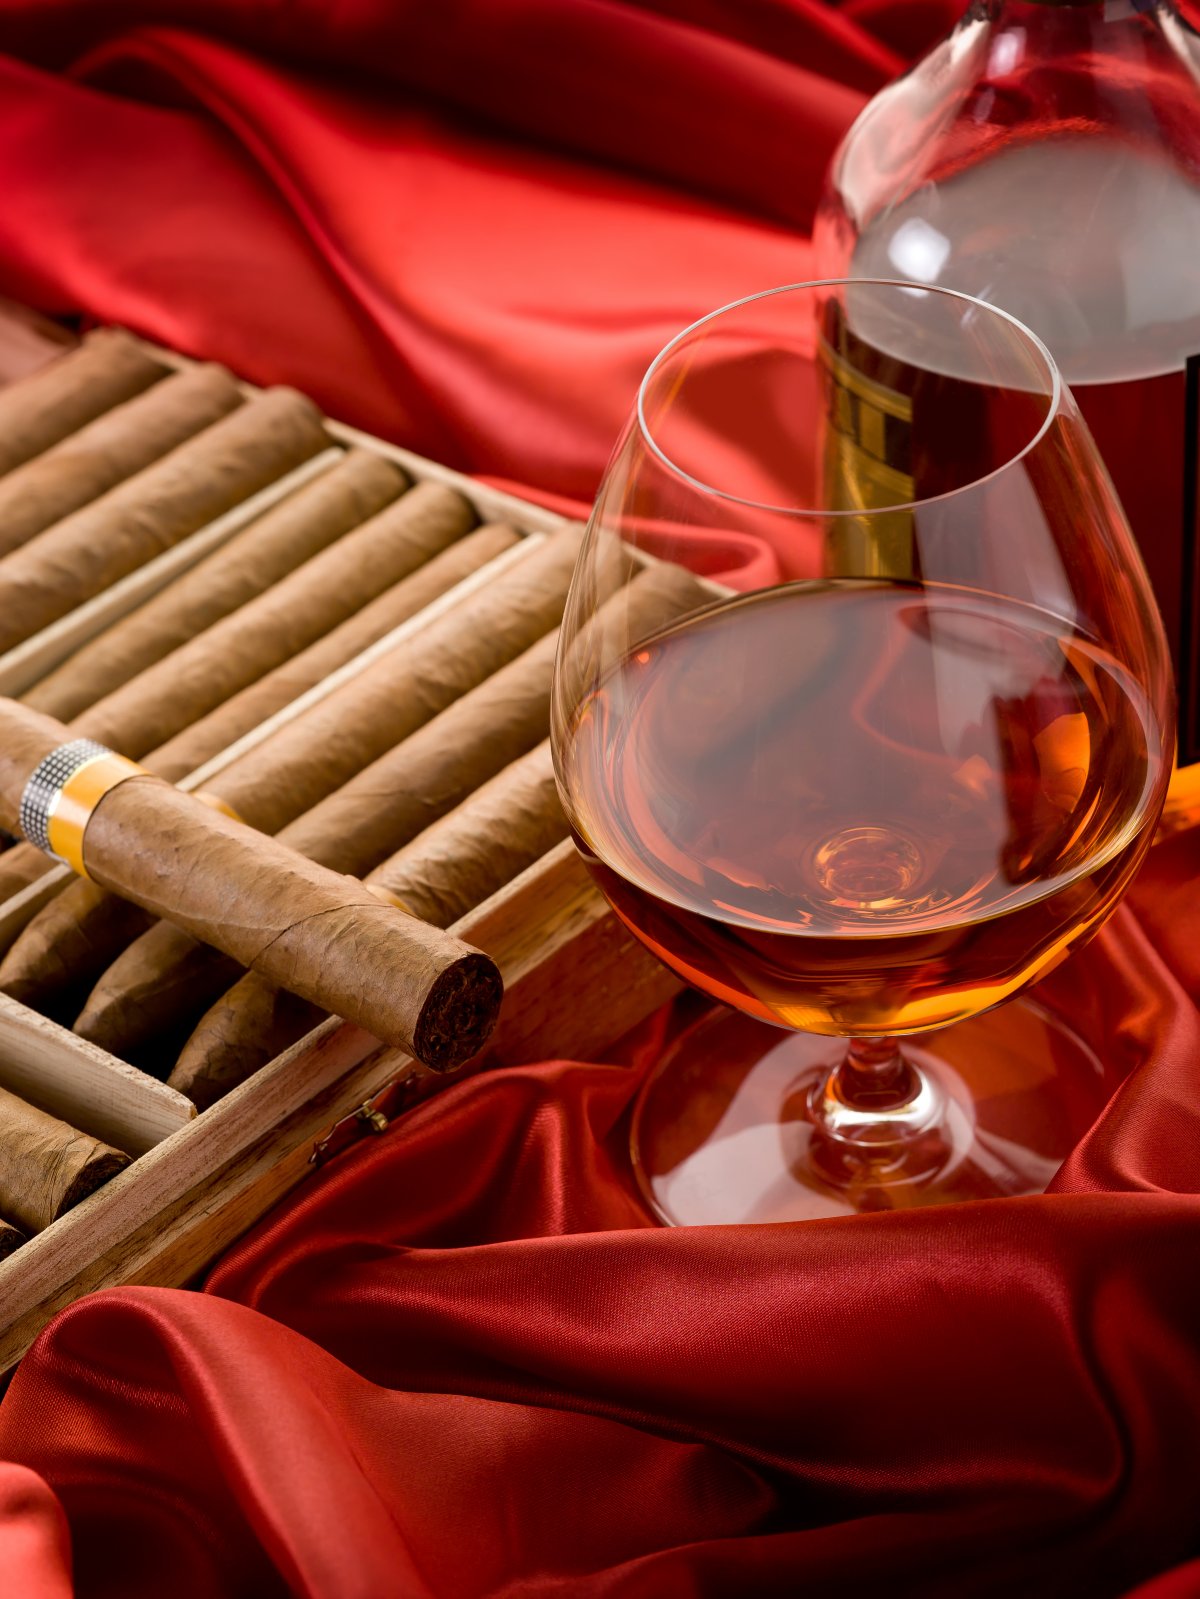 红丝绸香烟美酒图片,高清图片